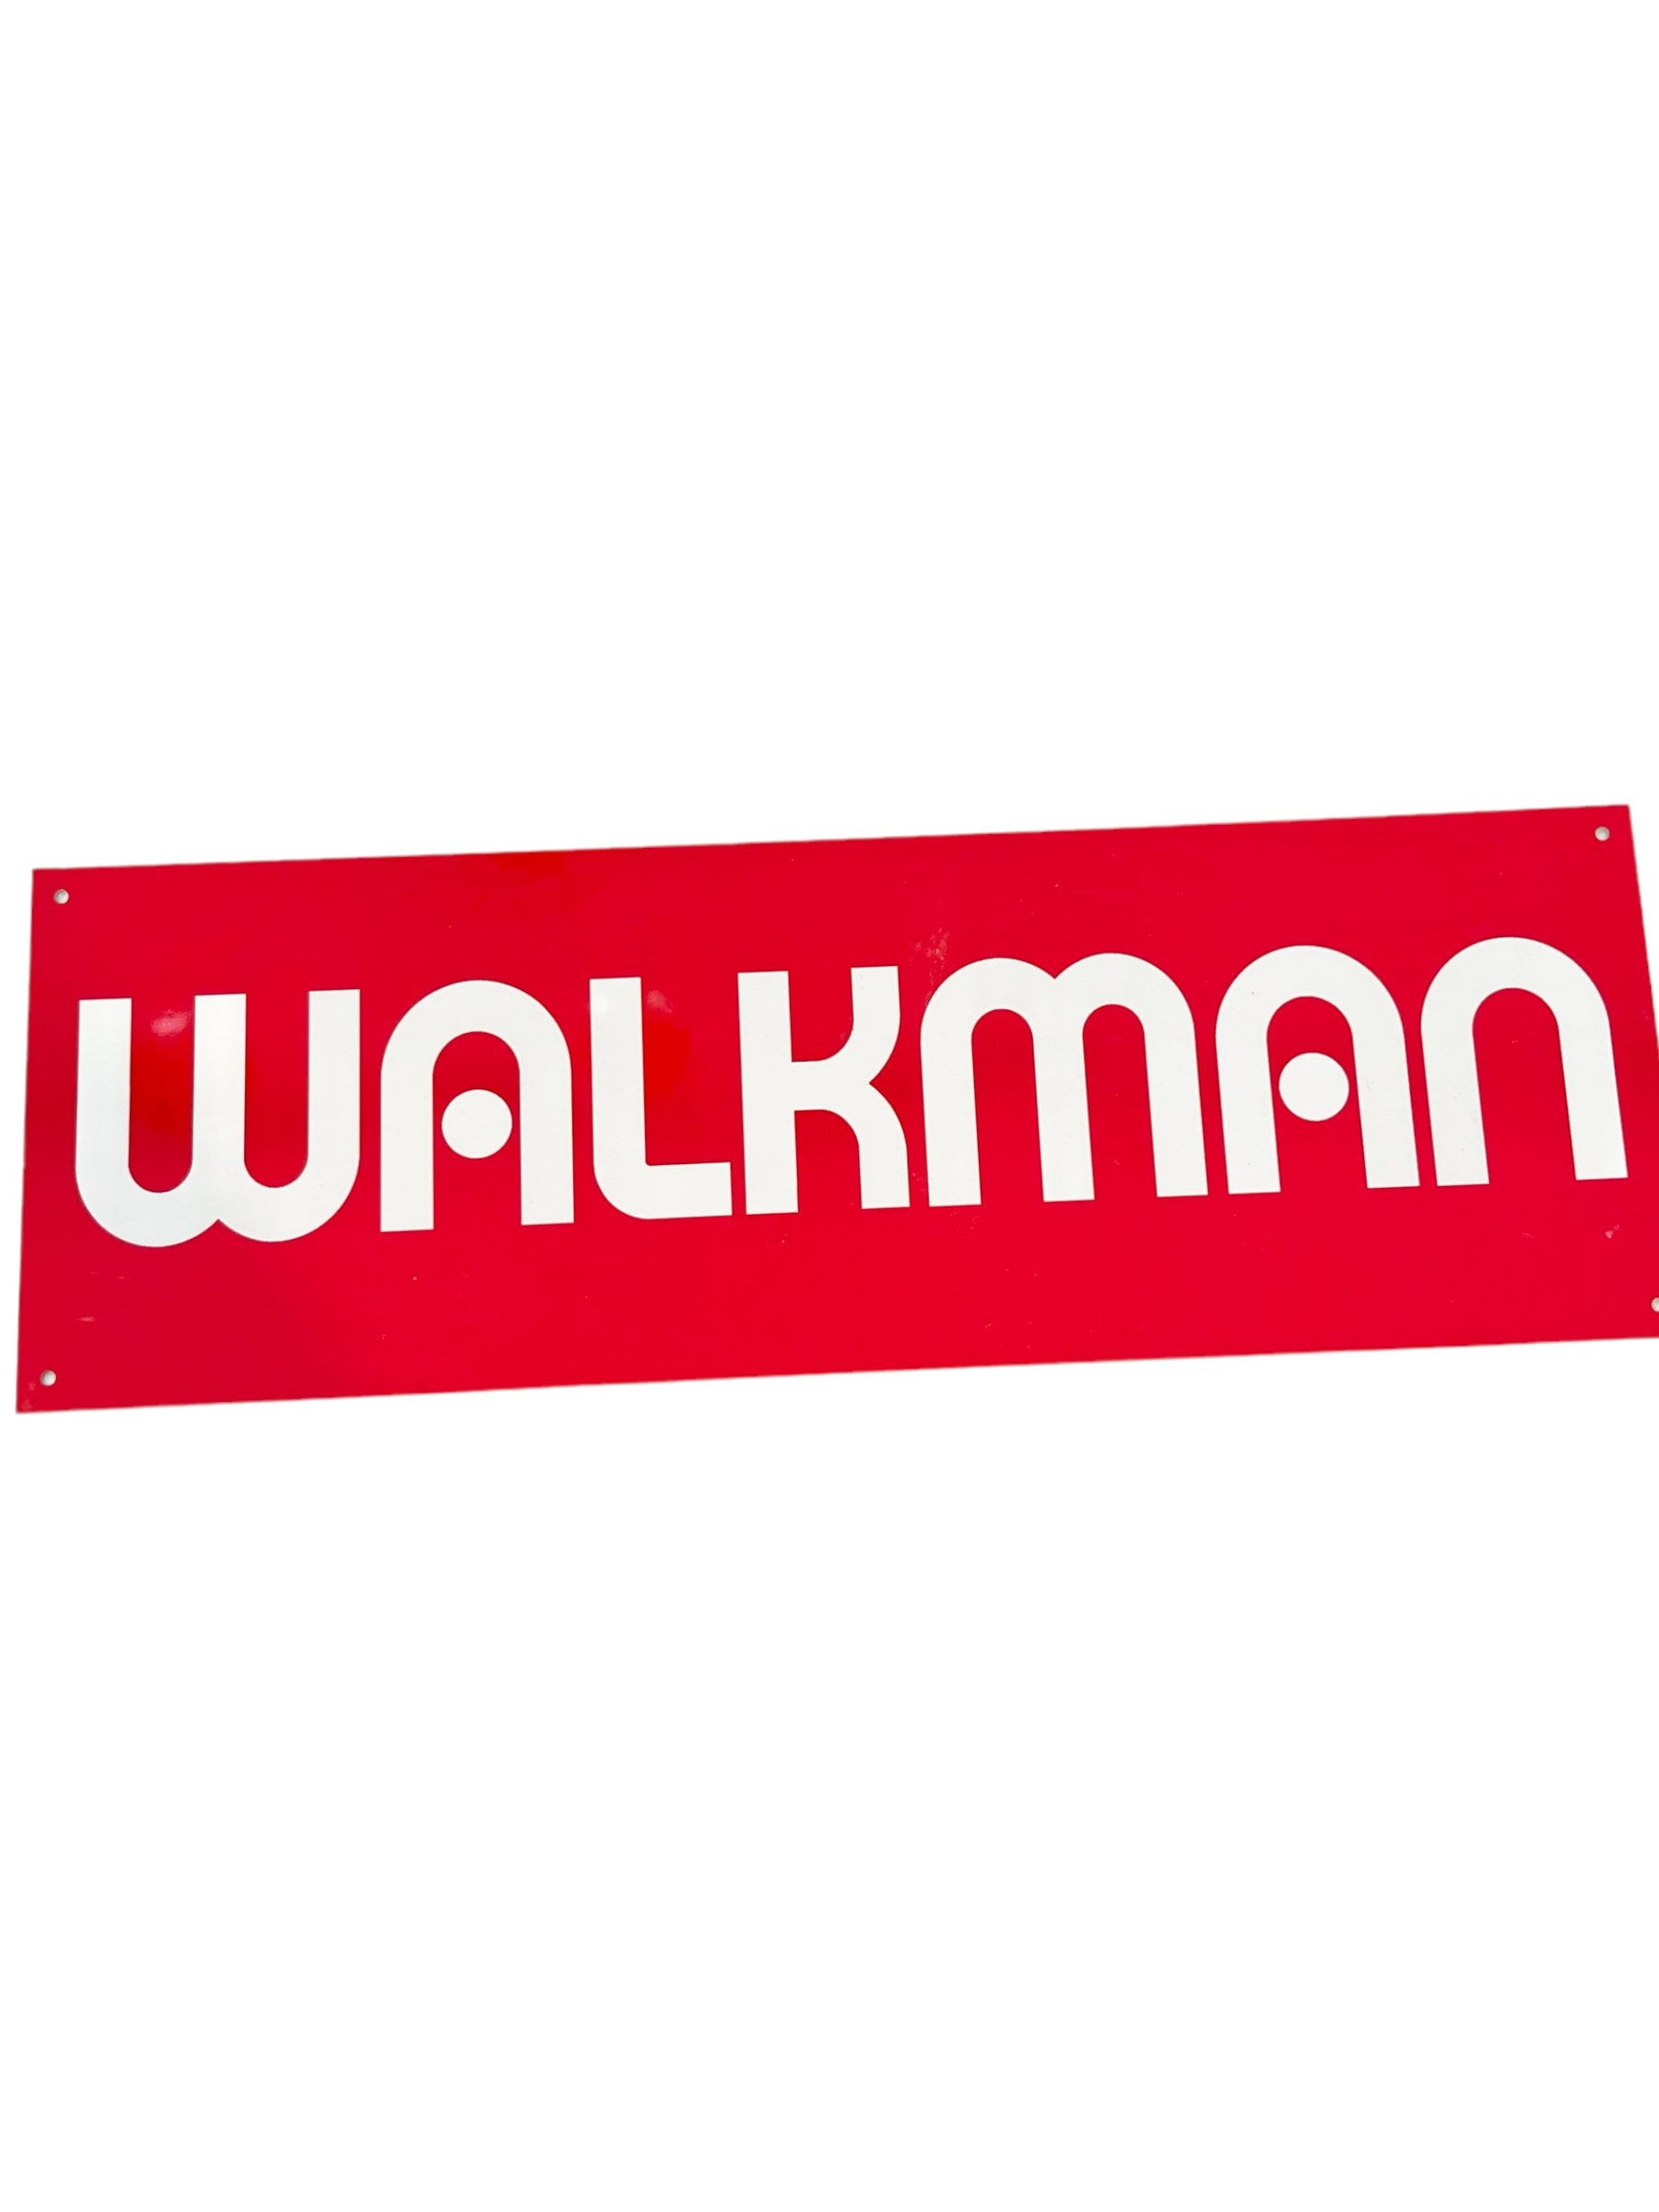 Walkman Logo png images | PNGWing